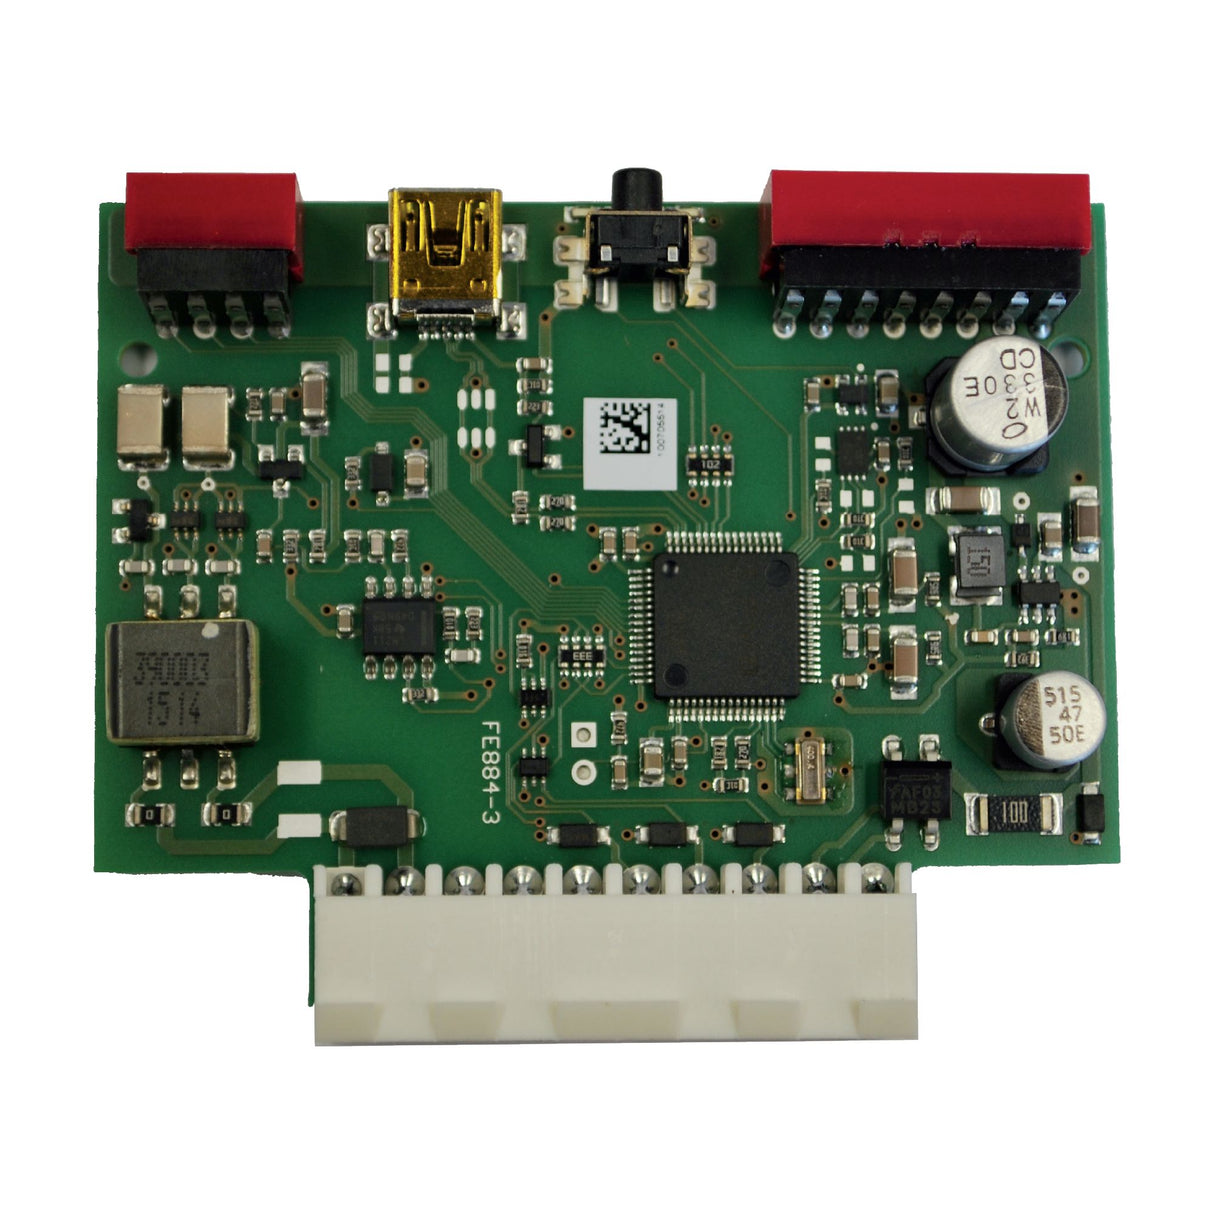 FAAC 2681 Plug-In Loop Detector